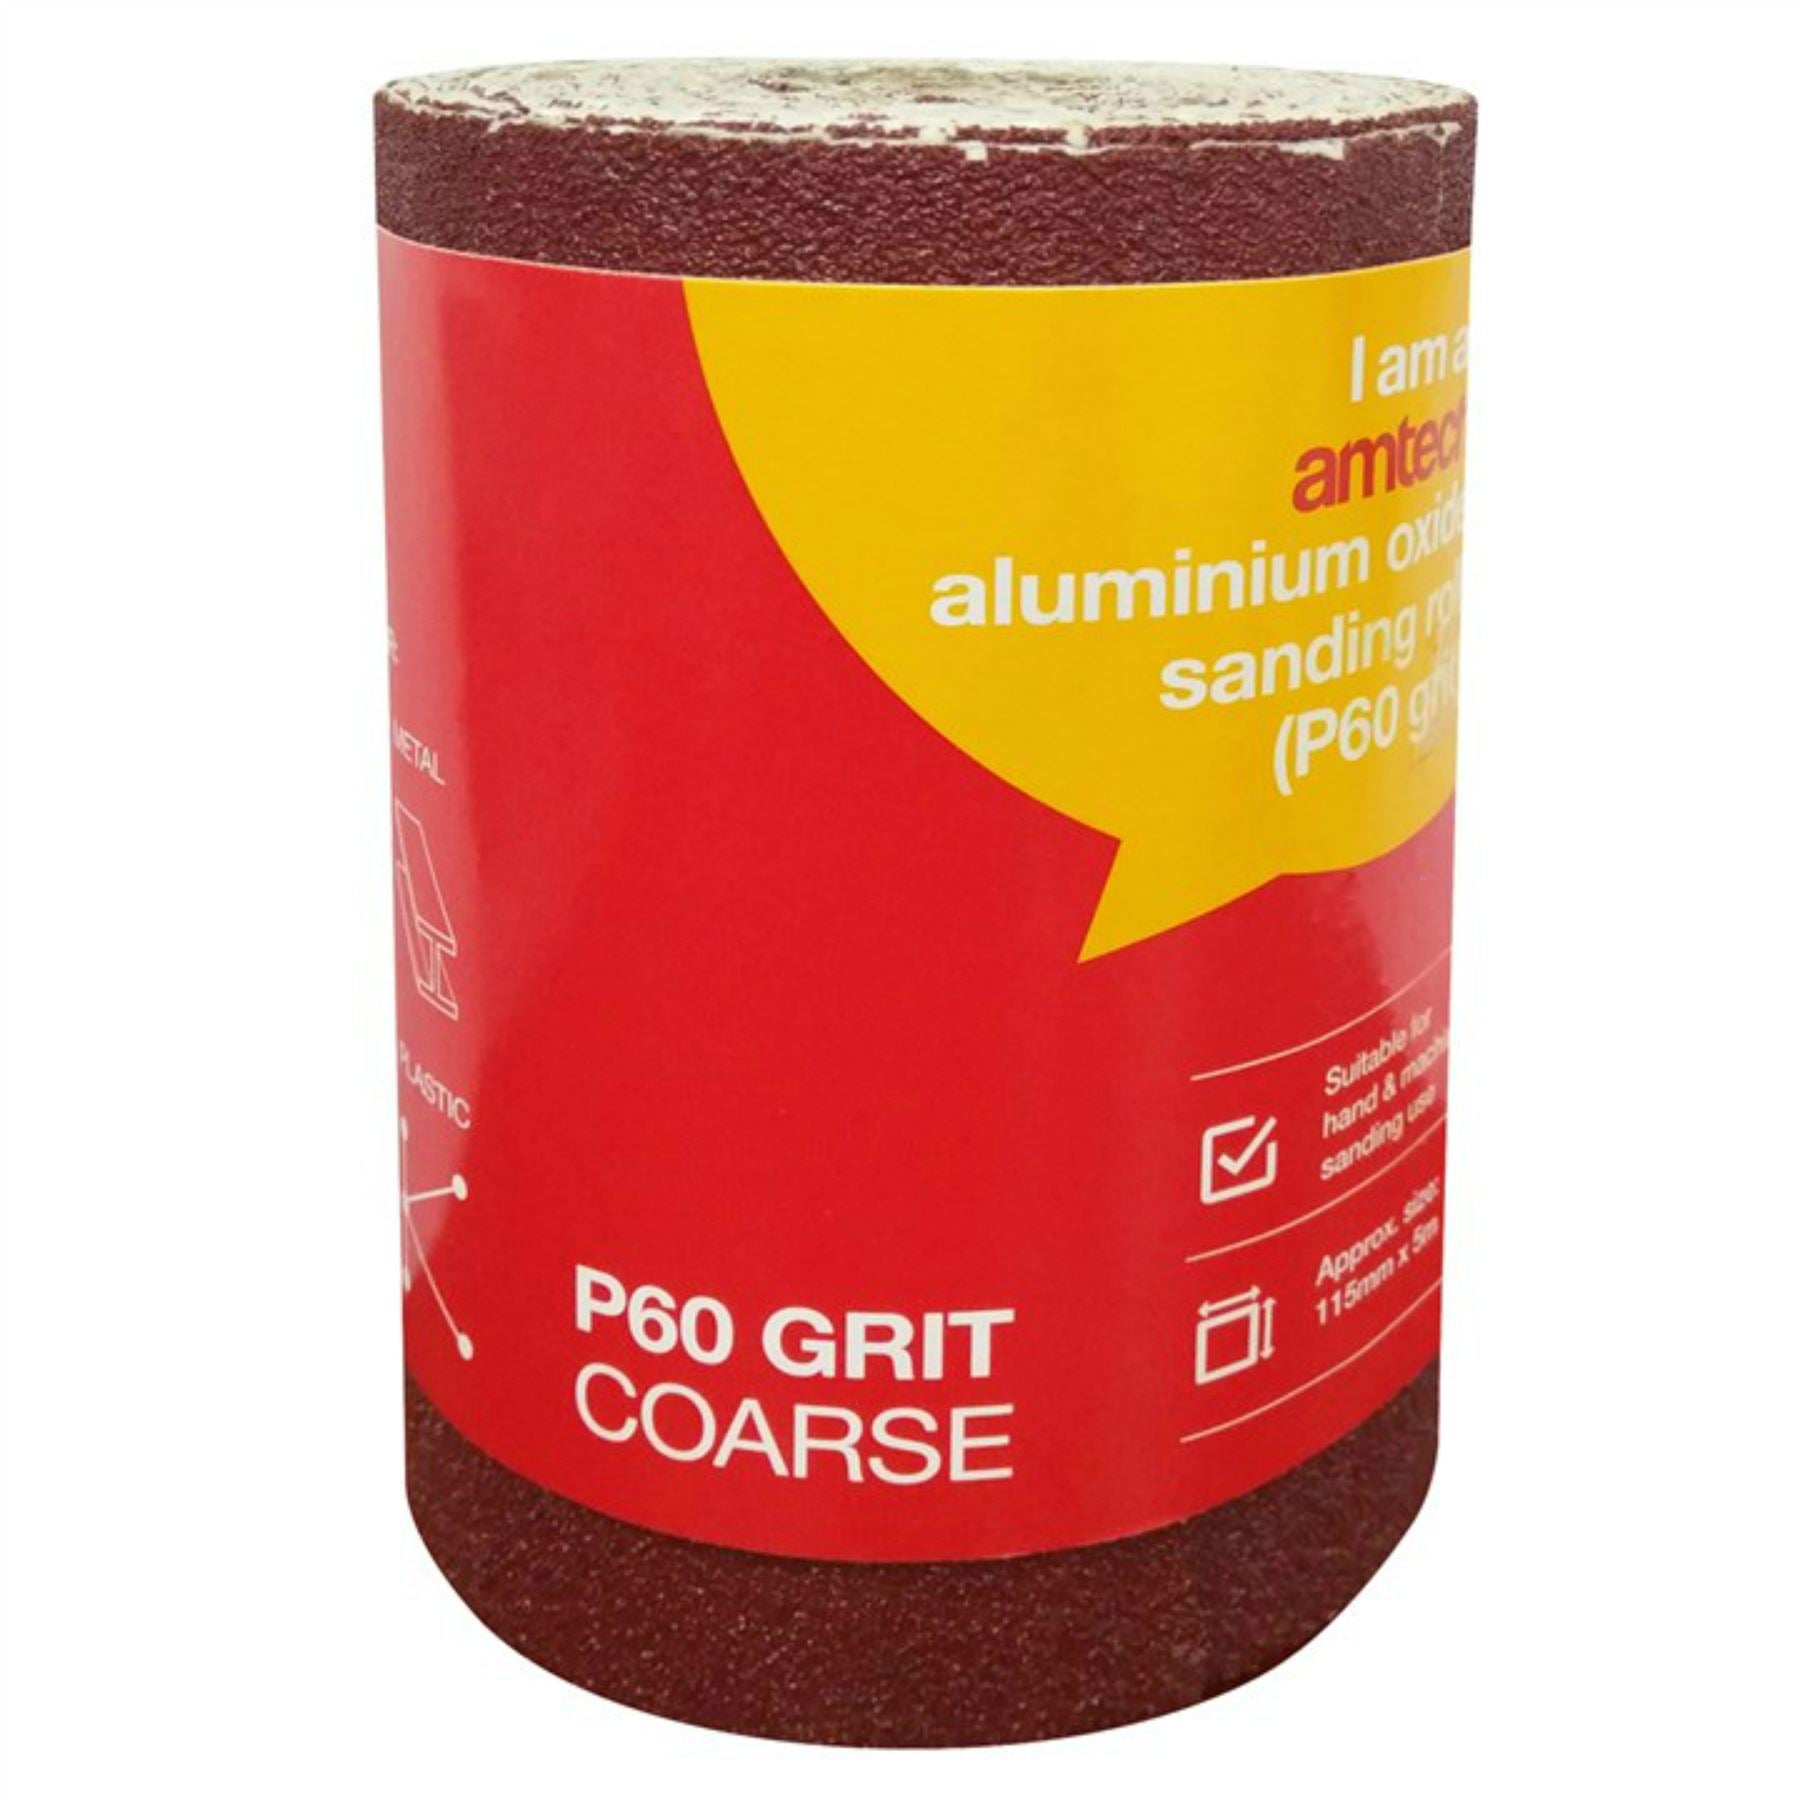 Amtech 5m Red Aluminium Oxide Sanding Roll 40 60 80 Or 120 Grit Sandpaper